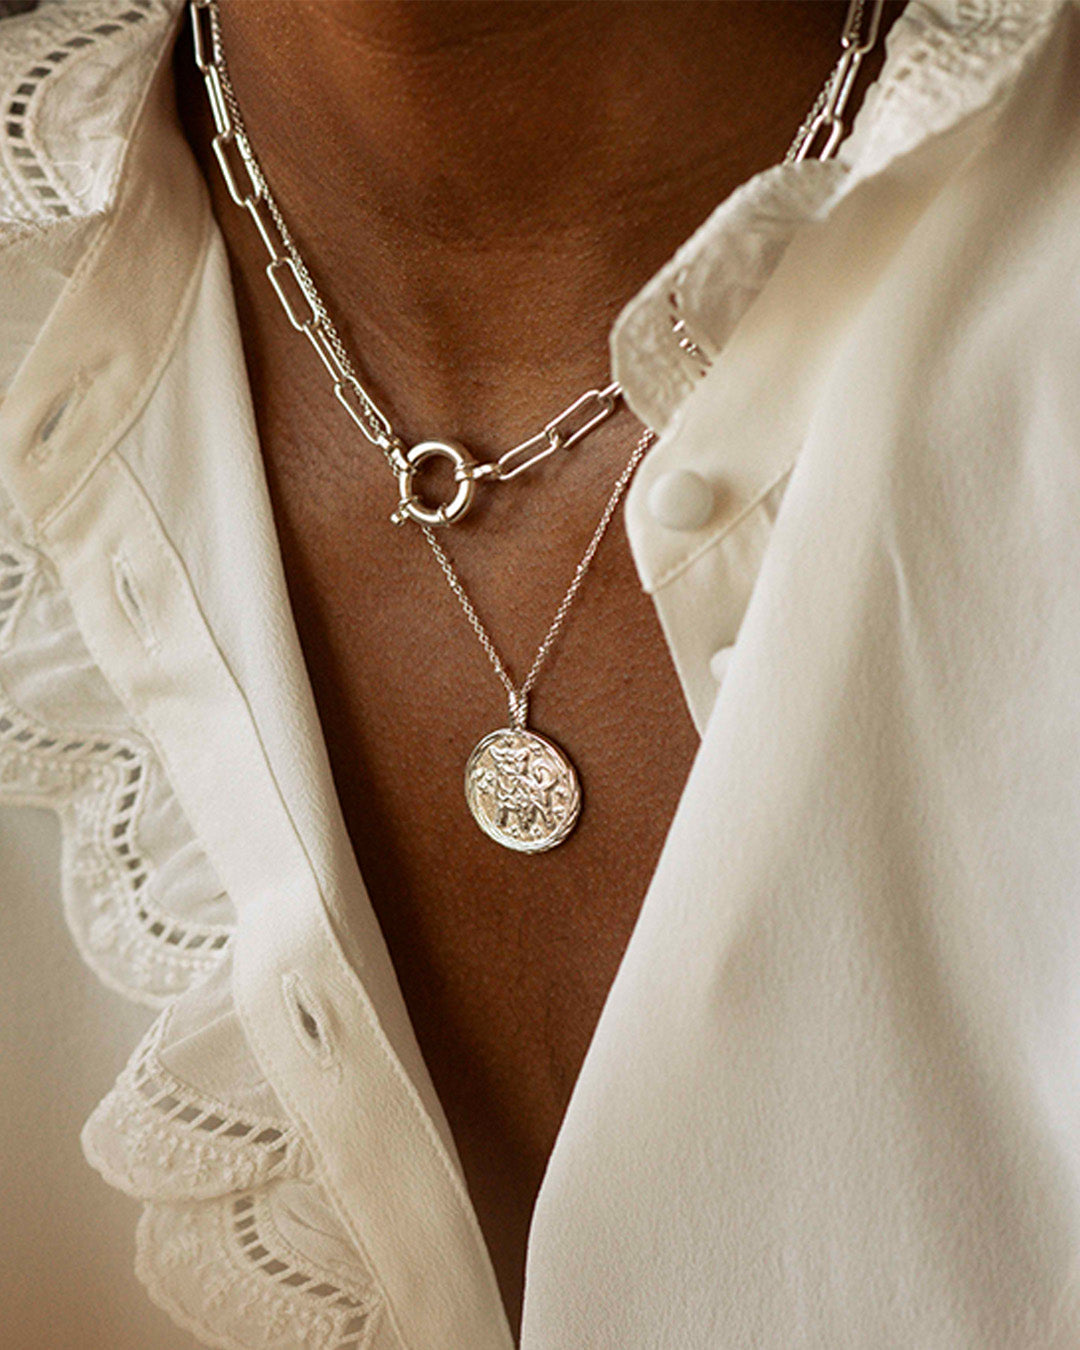 Association de bijoux éthiques fabriqués en France composée d'un collier en chaîne rectangle avec un gros fermoir rond, et d'un collier fin avec un pendentif formant une médaille au signe astrologique.